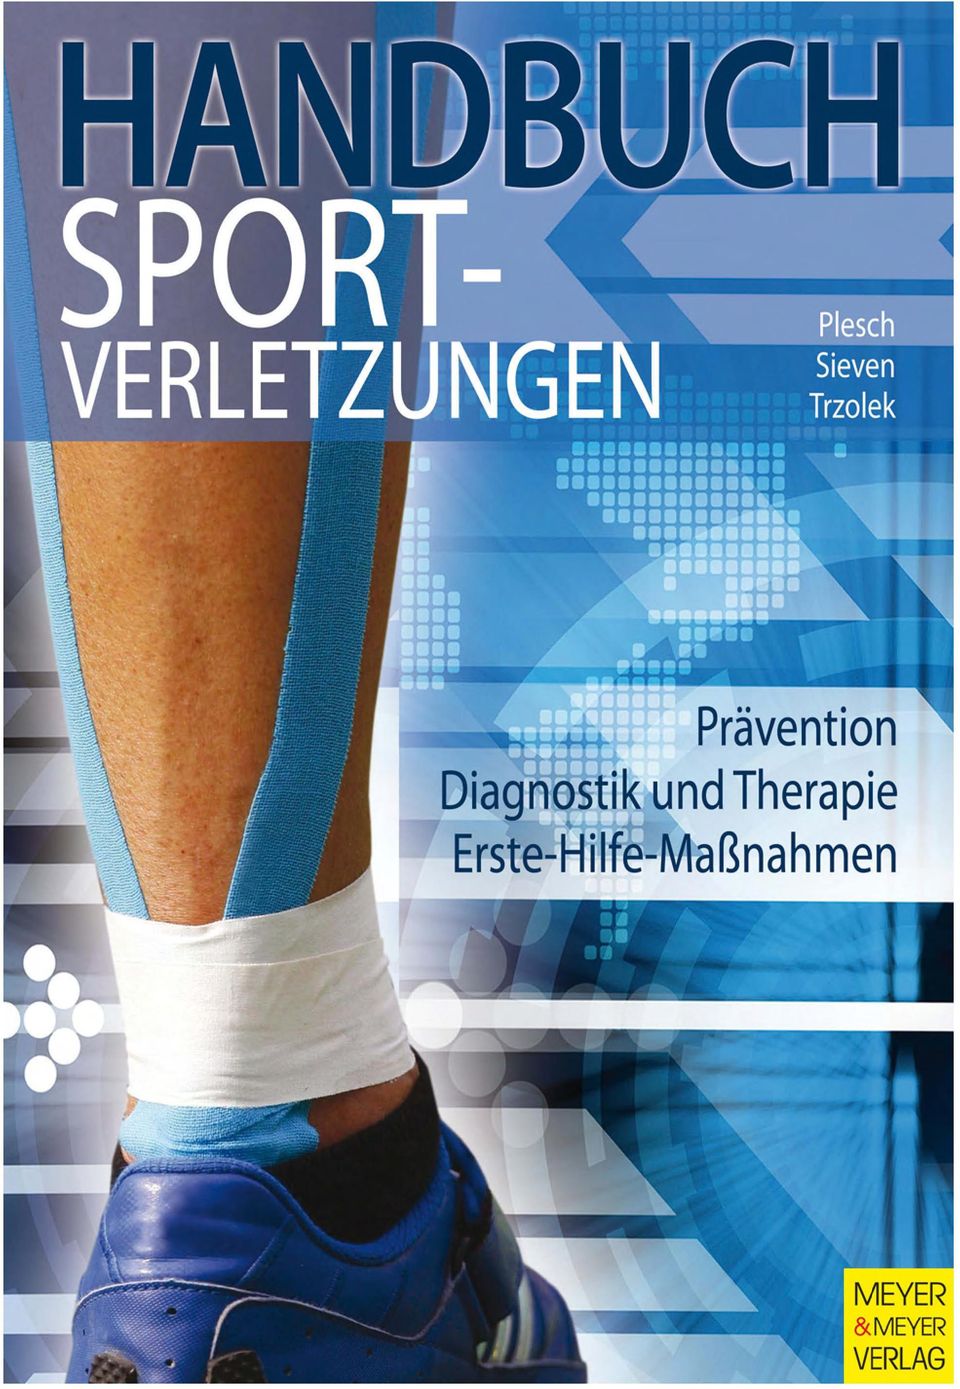 In diesem Buch werden Verletzungen im Sport, Folgen der Fehlbelastungen und Überlastungsschäden erklärt.